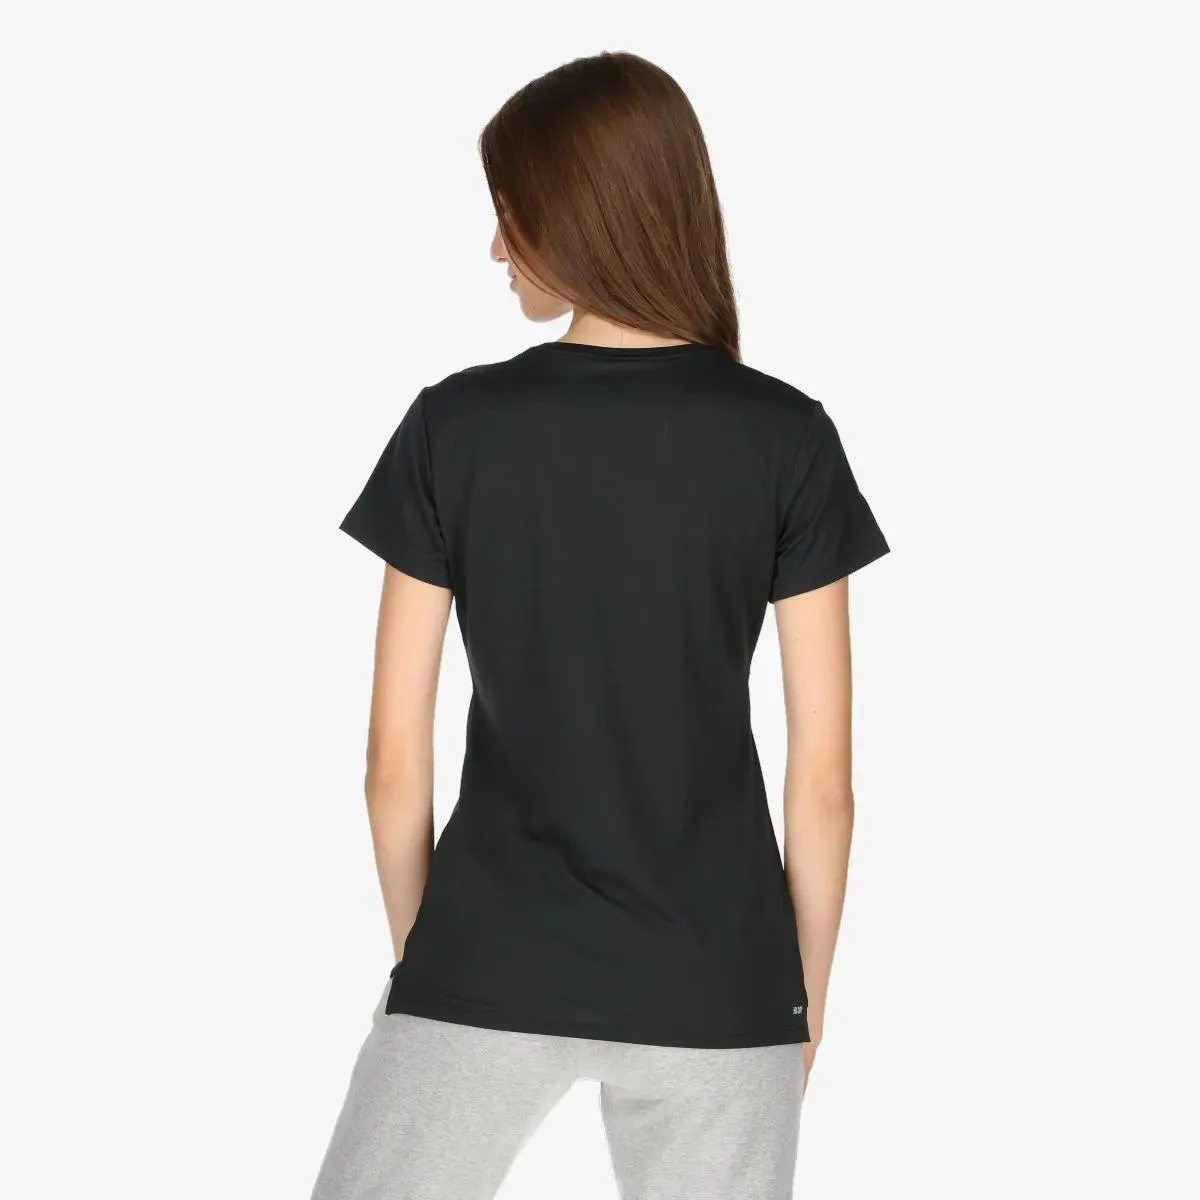 New Balance T-shirt CORE BASIC 